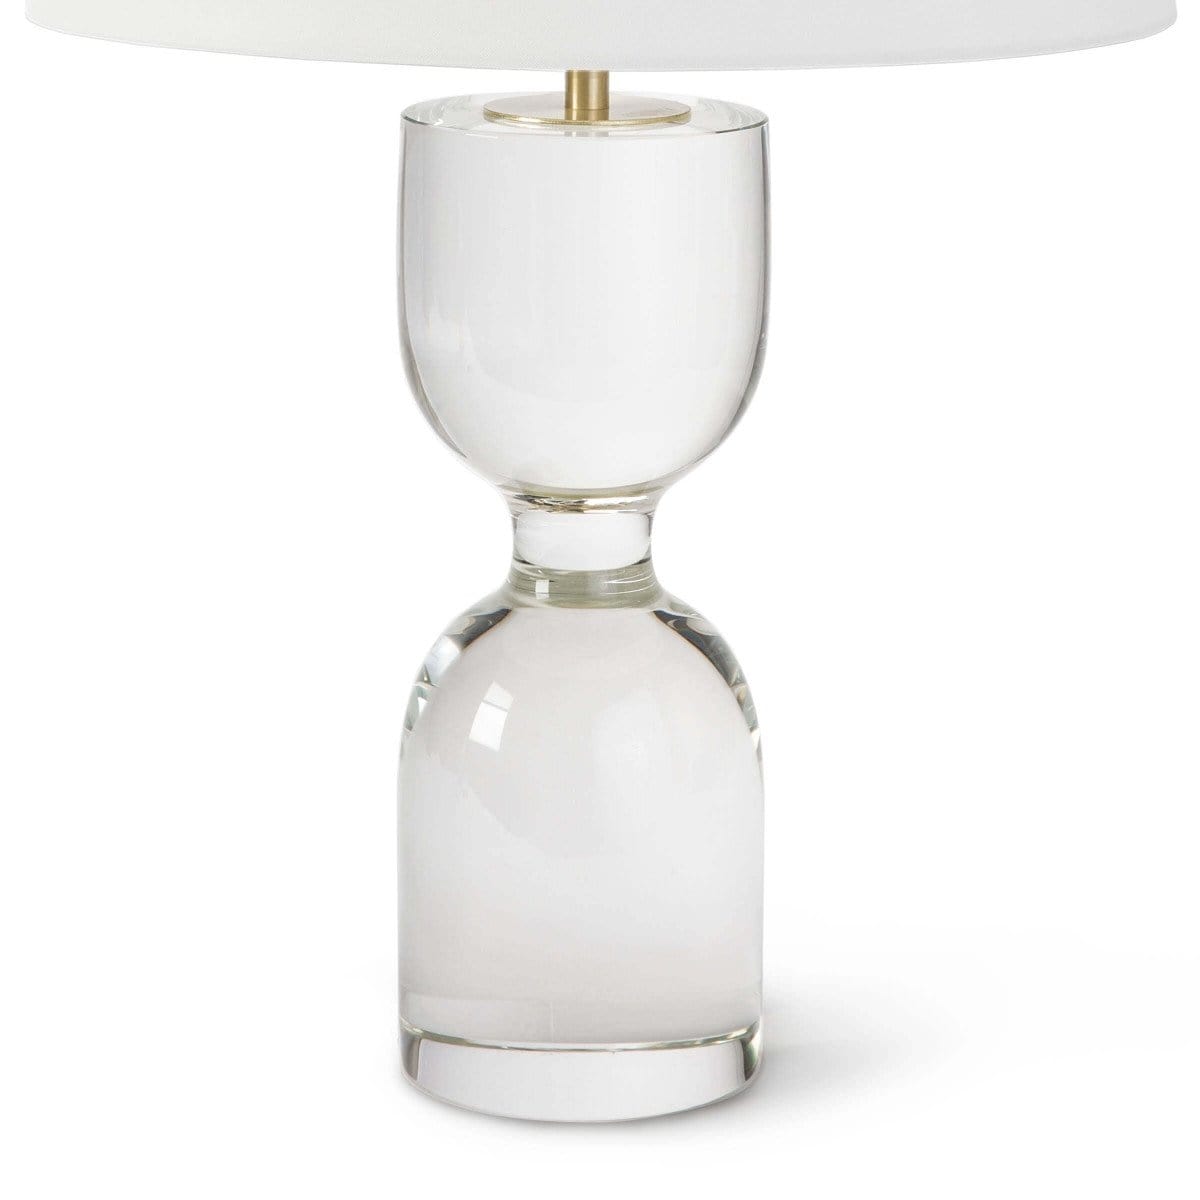 Regina Andrew Joan Crystal Table Lamp - Large Lighting regina-andrew-13-1395 00844717094187